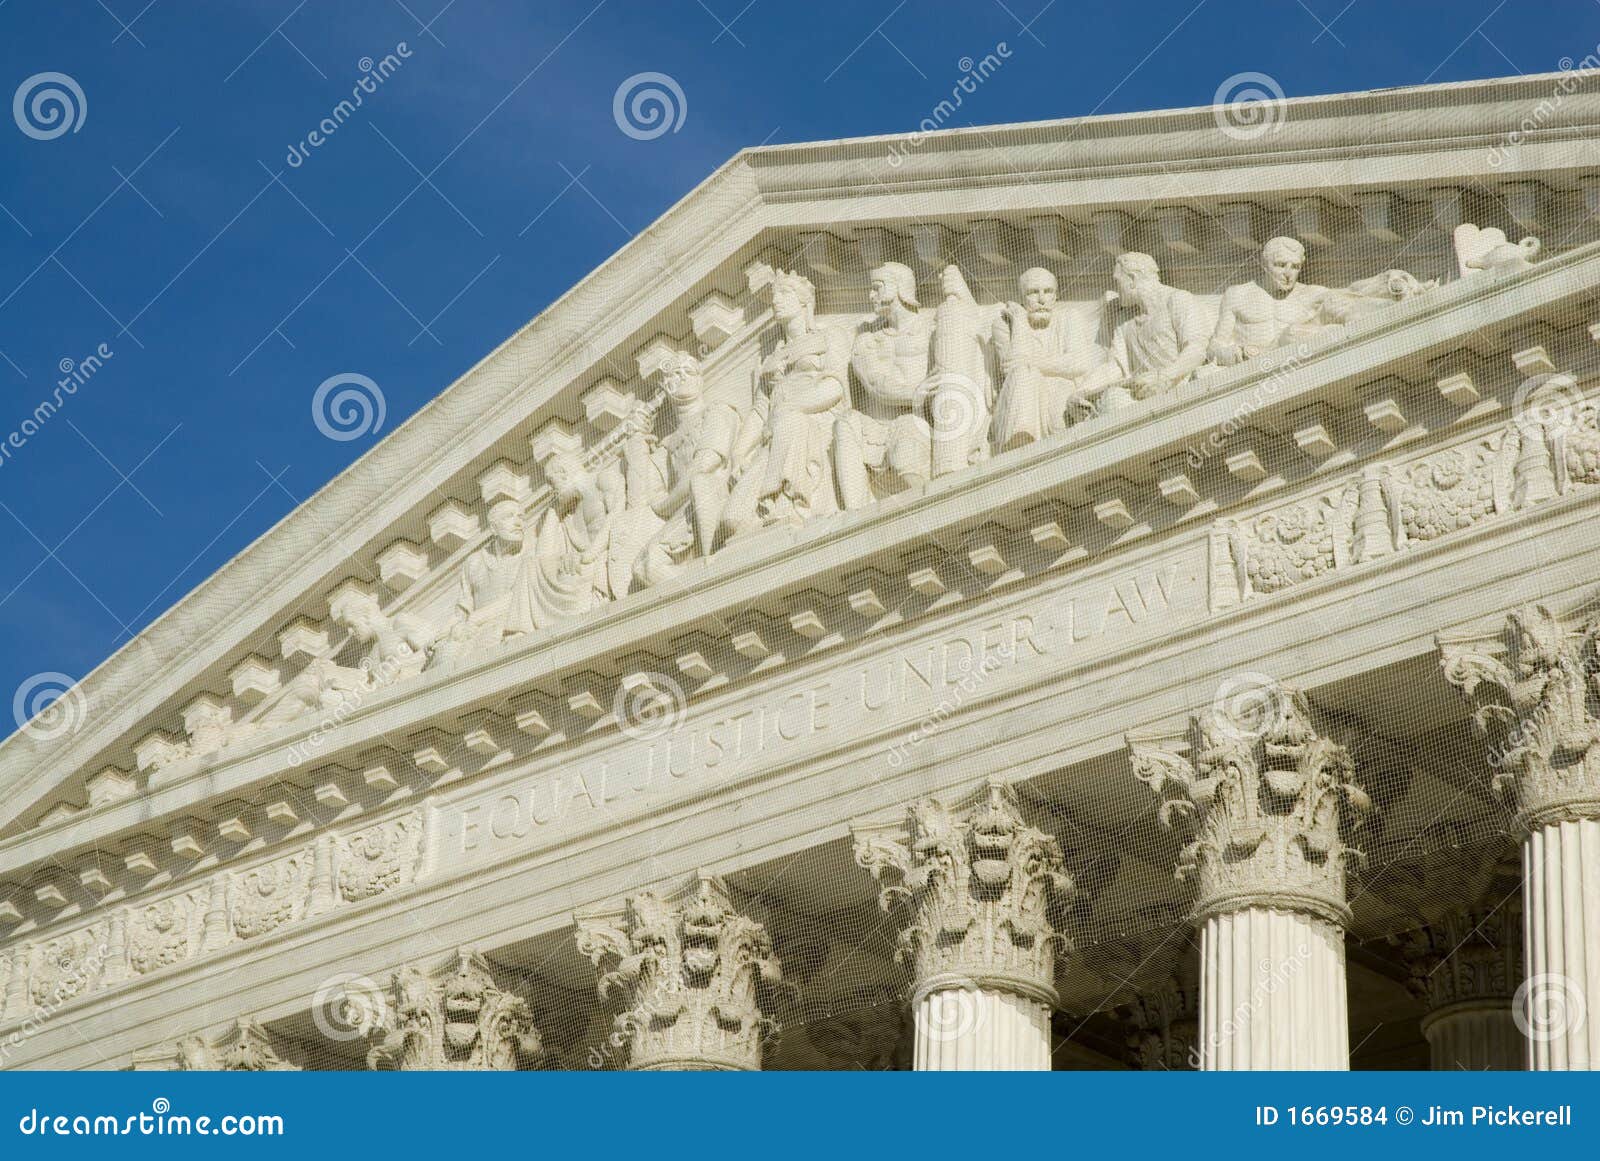 Corte suprema dos E.U. no Washington DC